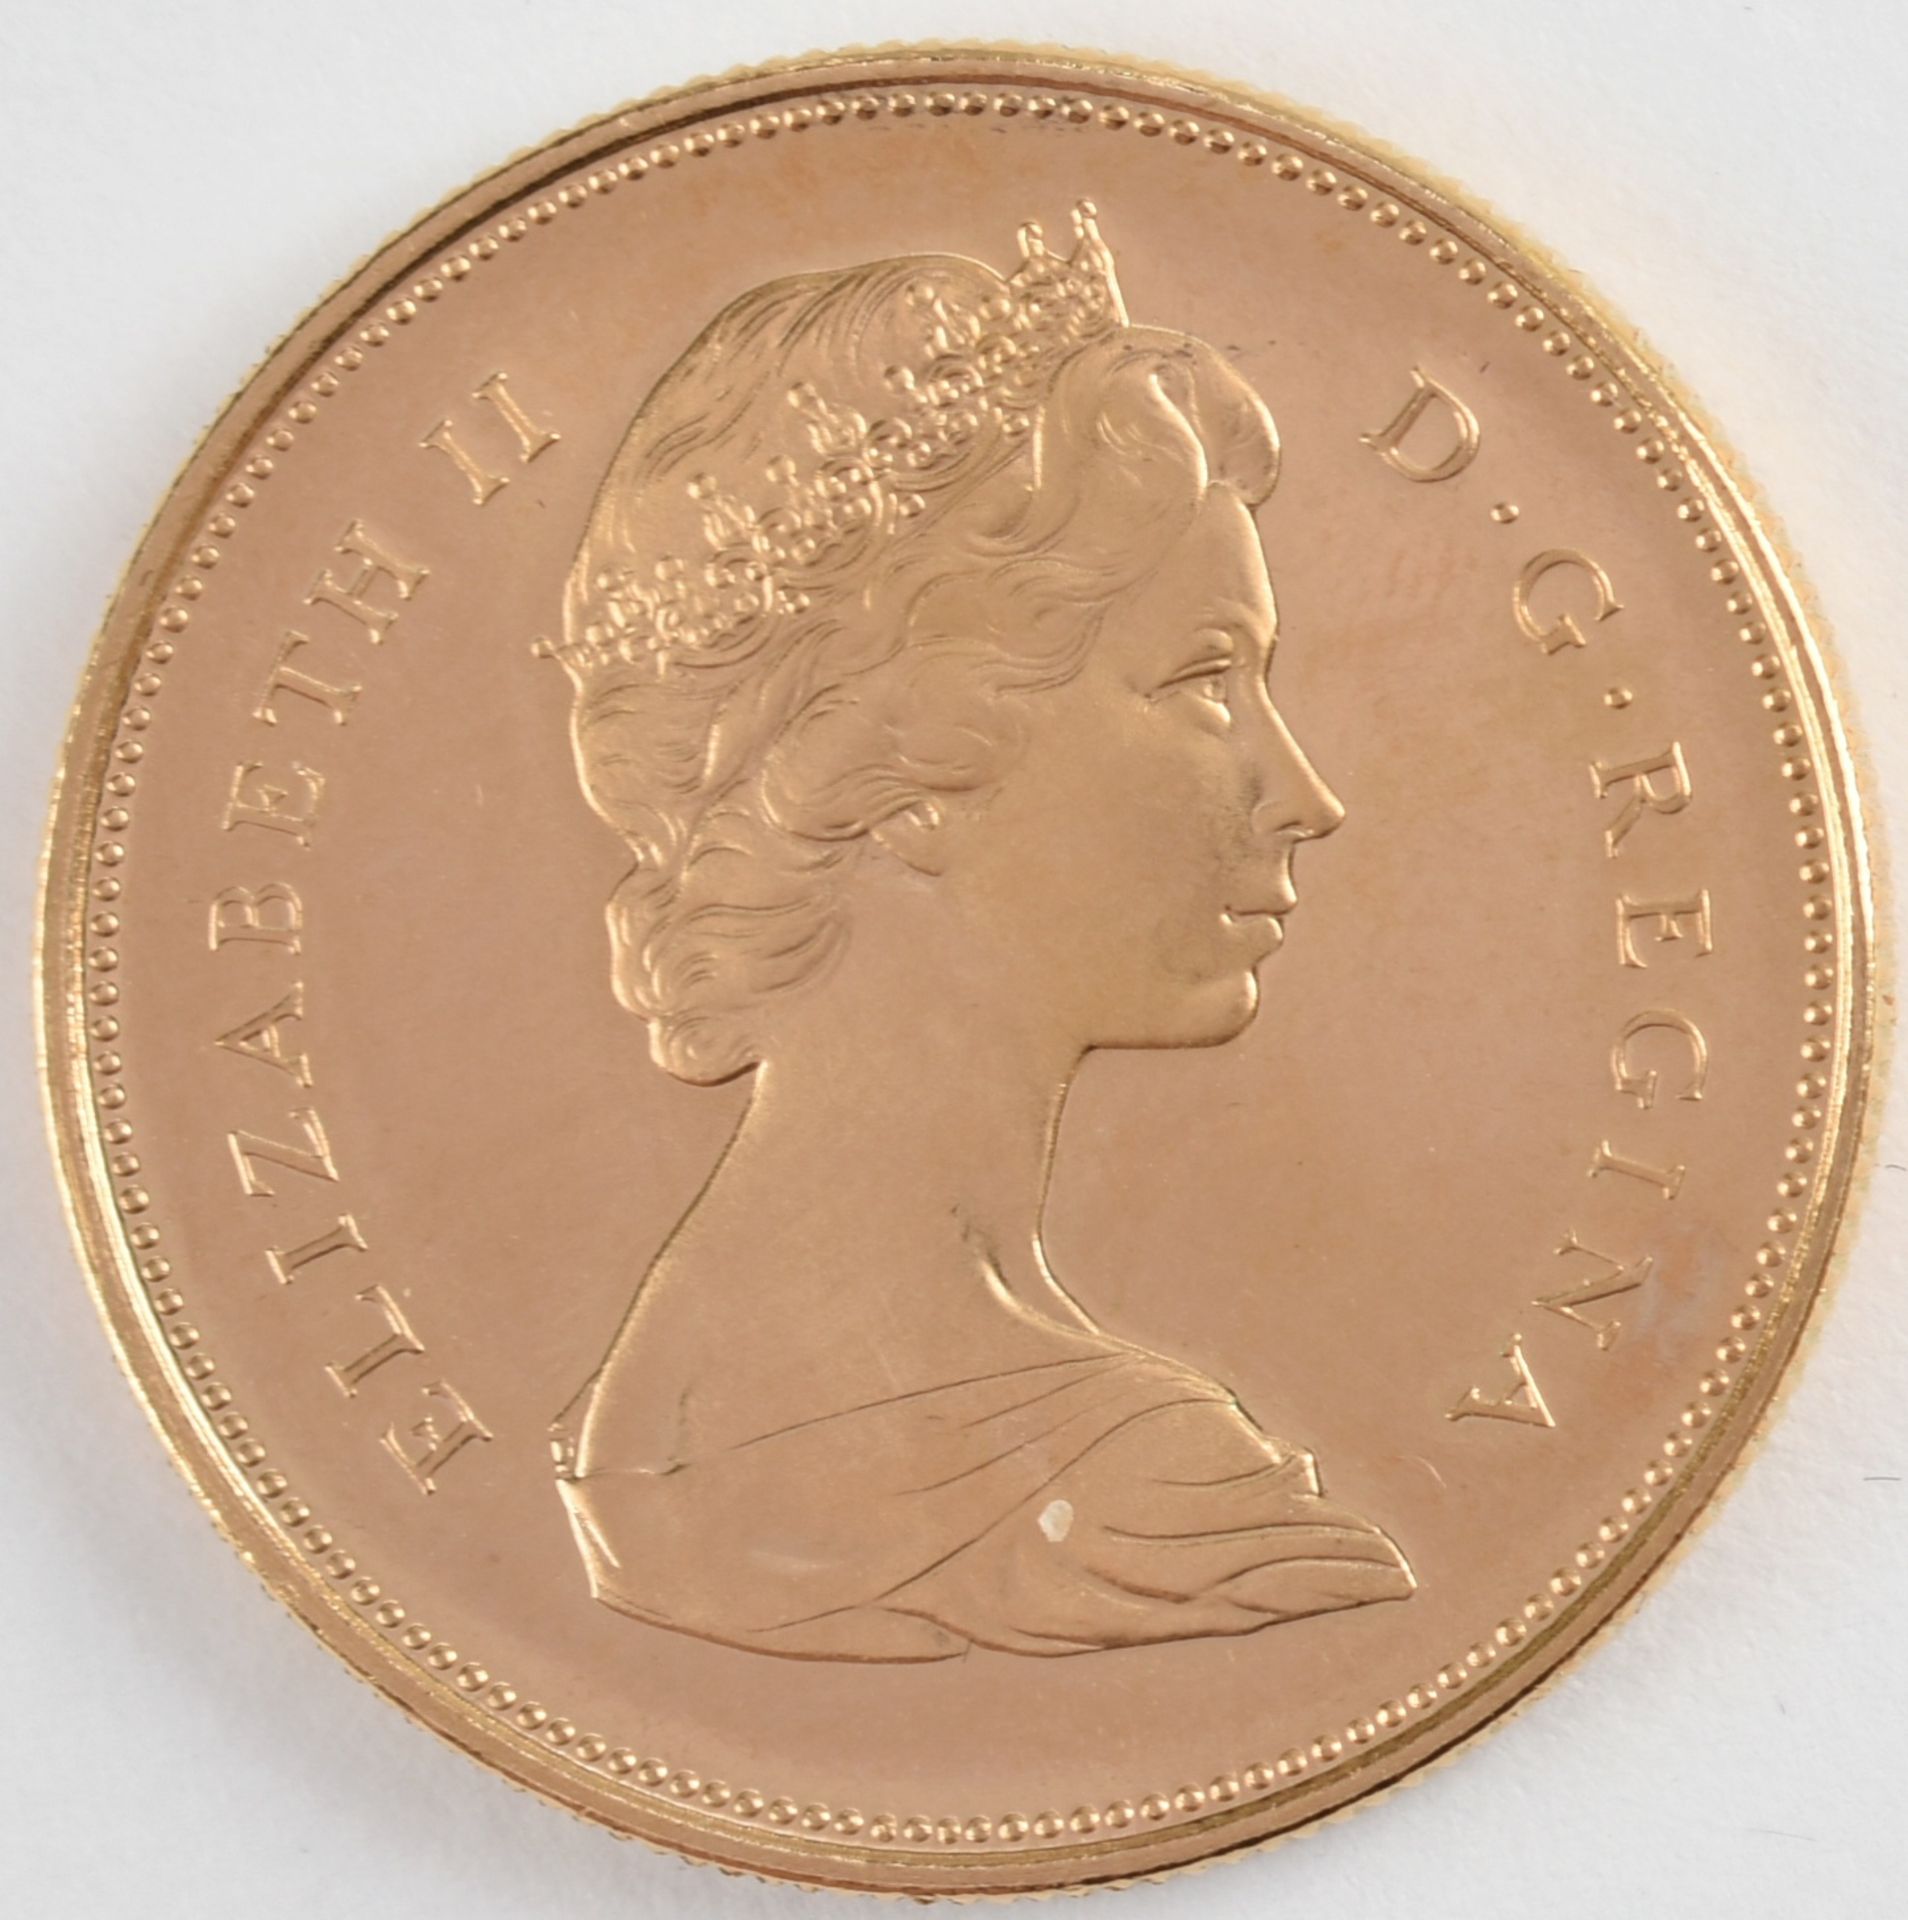 Goldmünze Kanada 1967 20 Dollars in Gold, 900/1000, 18,273 g, av. Königin Elisabeth II. Büste rechts - Image 2 of 3